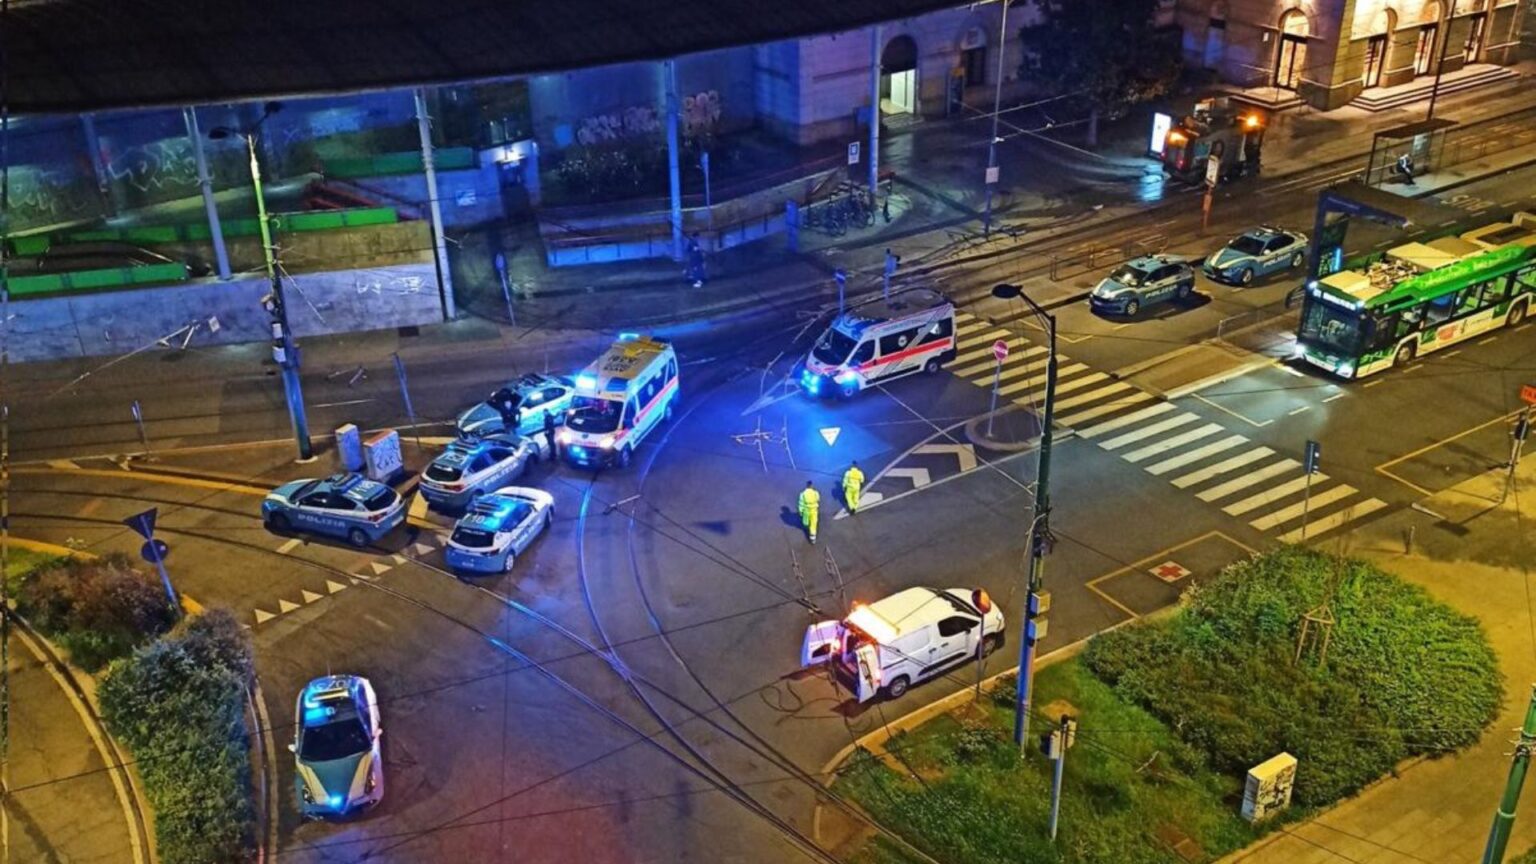 Milano, poliziotto accoltellato nella stazione di Lambrate